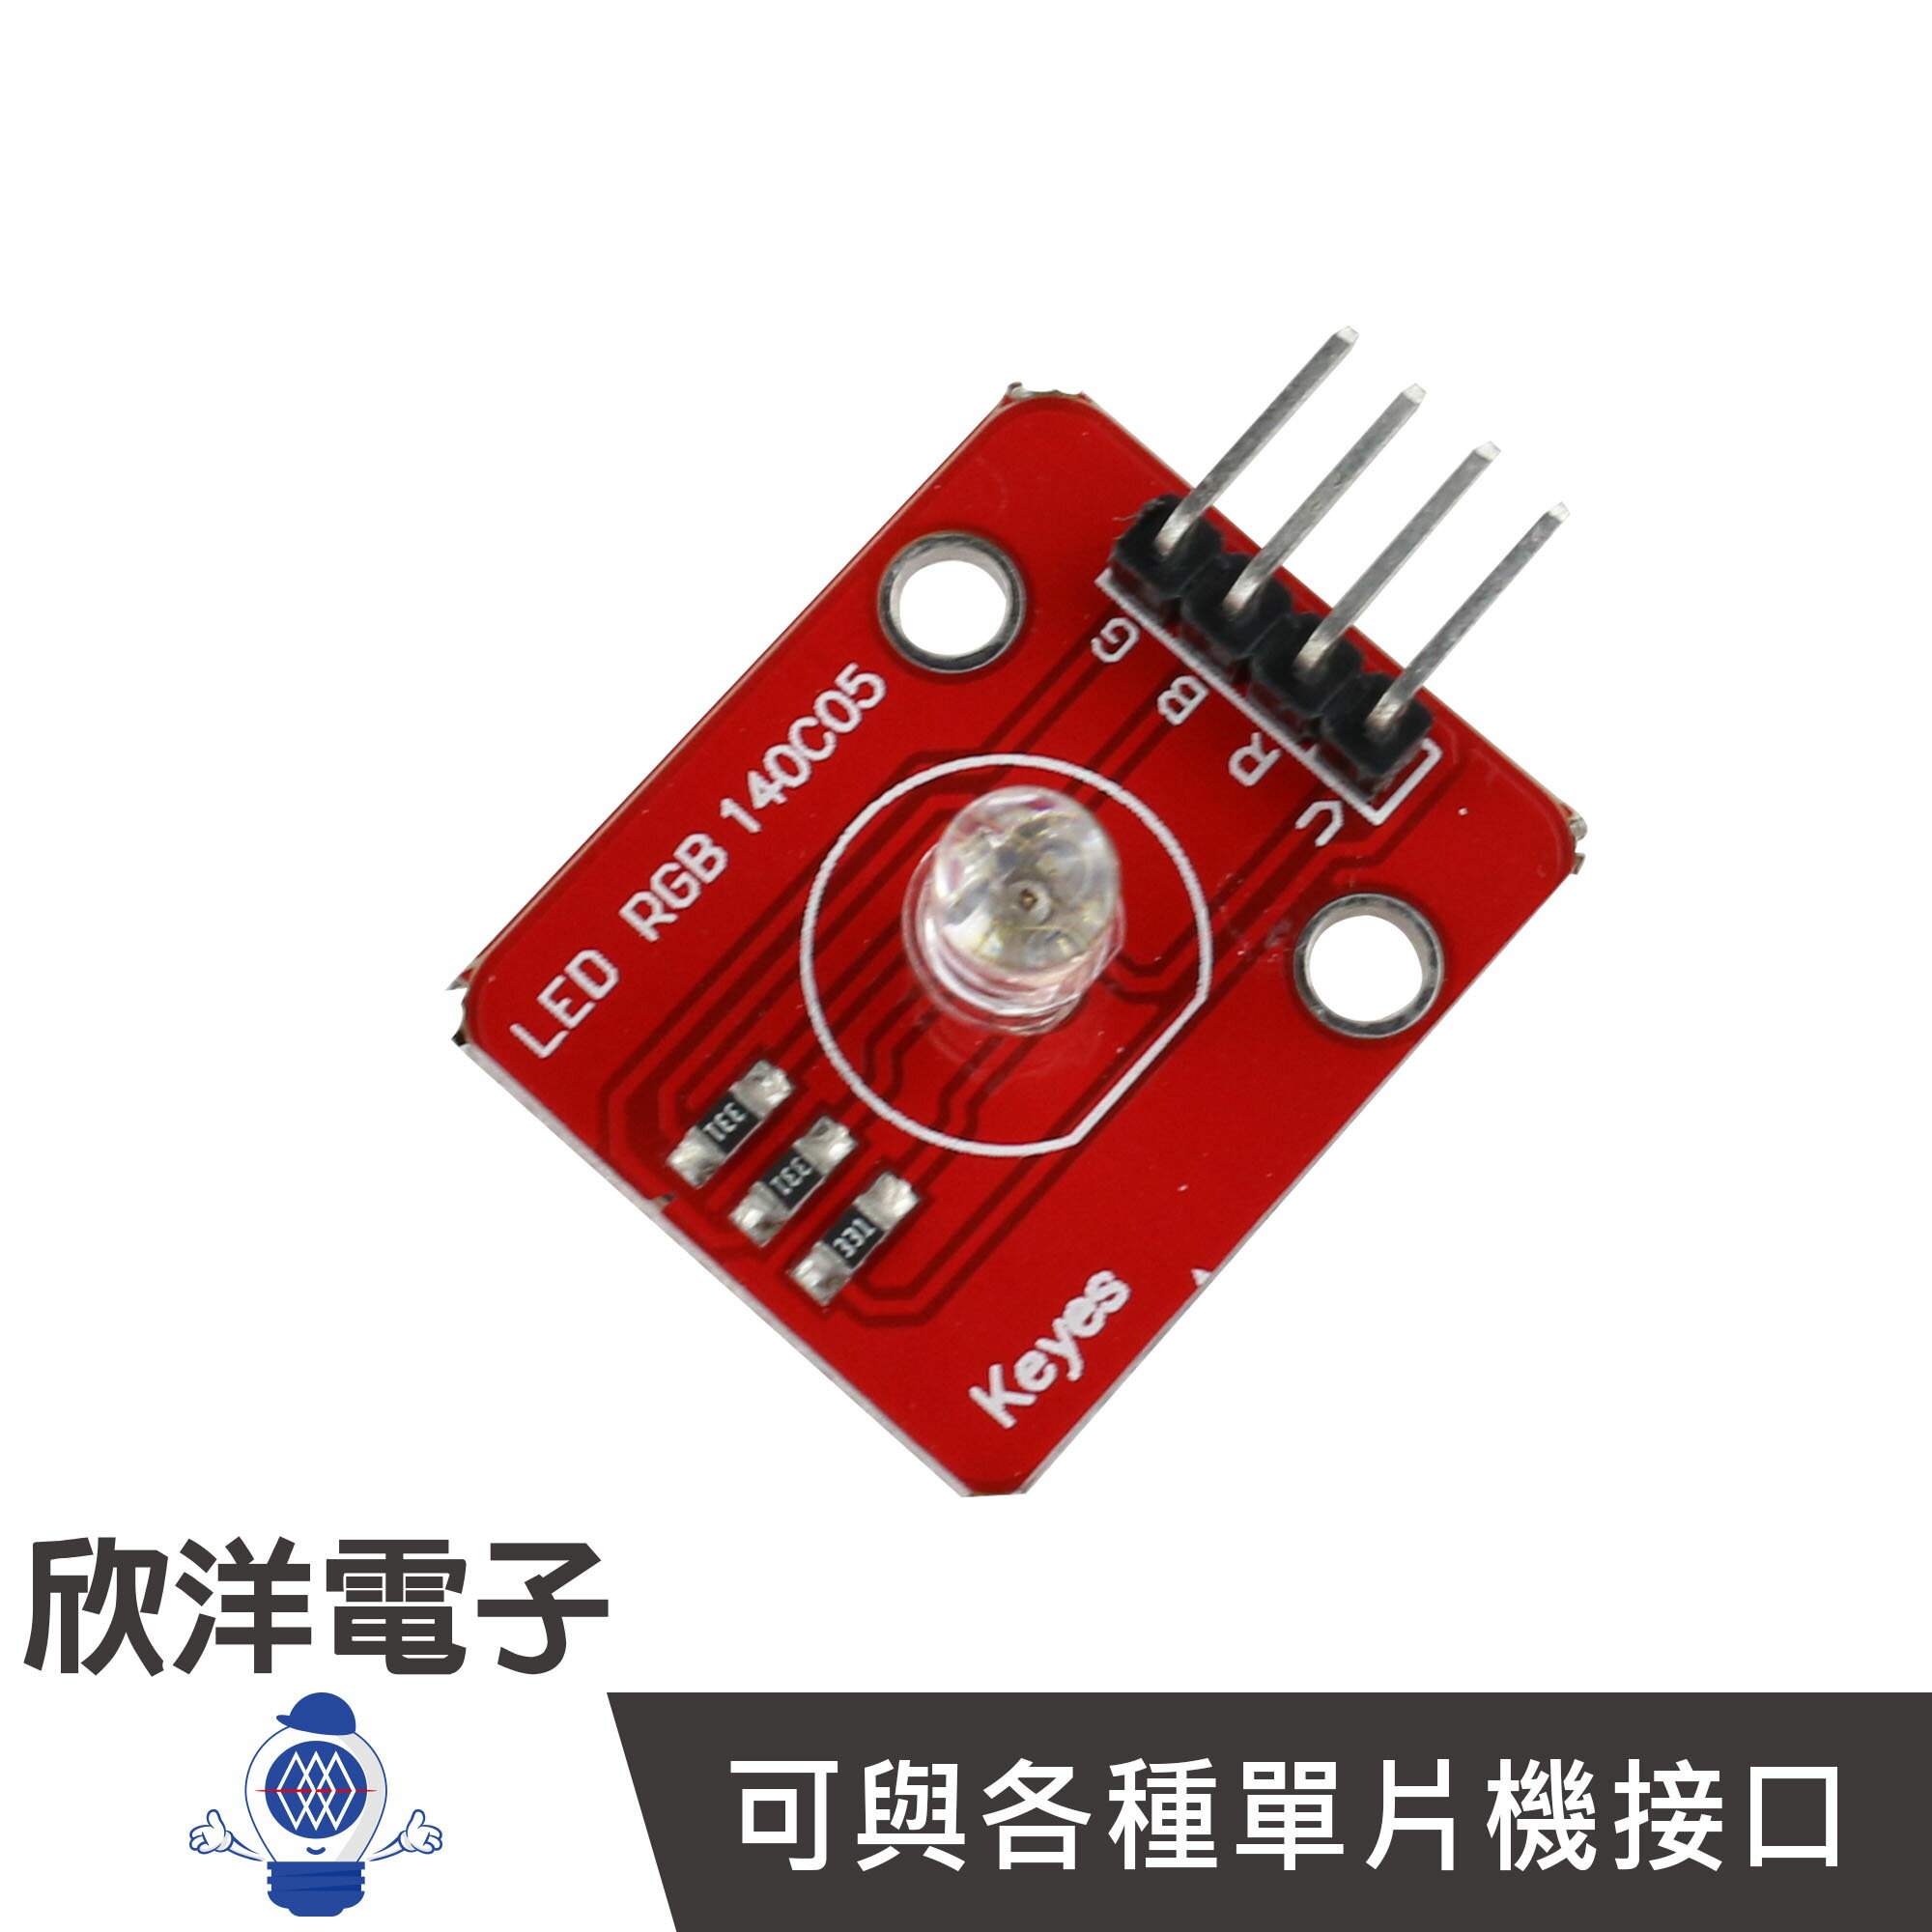 ※ 欣洋電子 ※ 全彩 3色LED傳感器 (#37-13) /實驗室、學生模組、電子材料、電子工程、適用Arduino